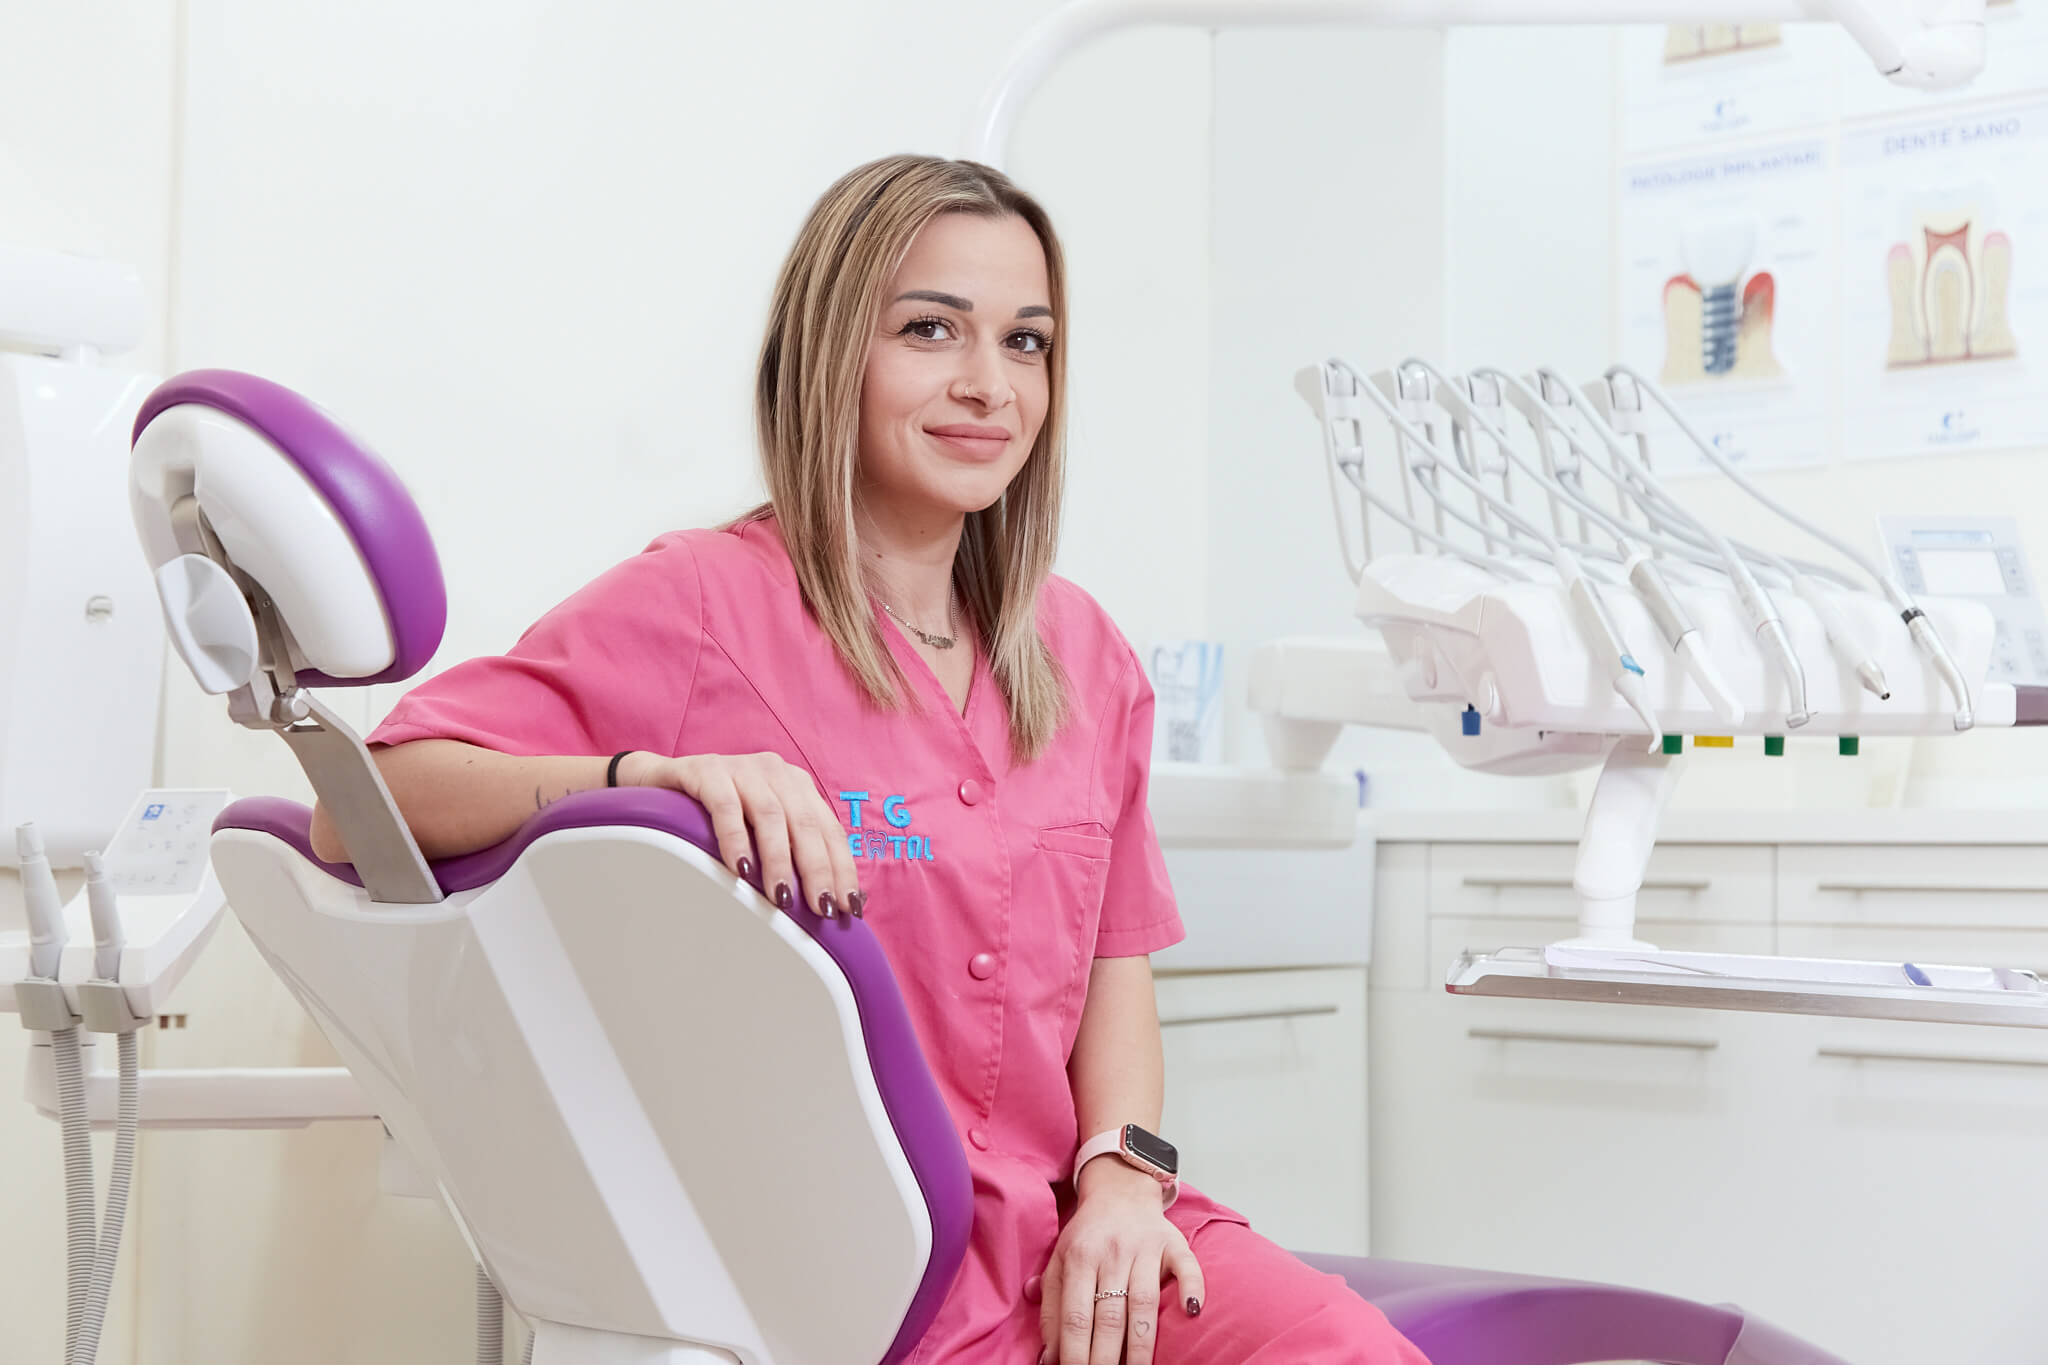 studio dentistico tg dental roma dentista finocchio borghesiana bambini Ilaria aso